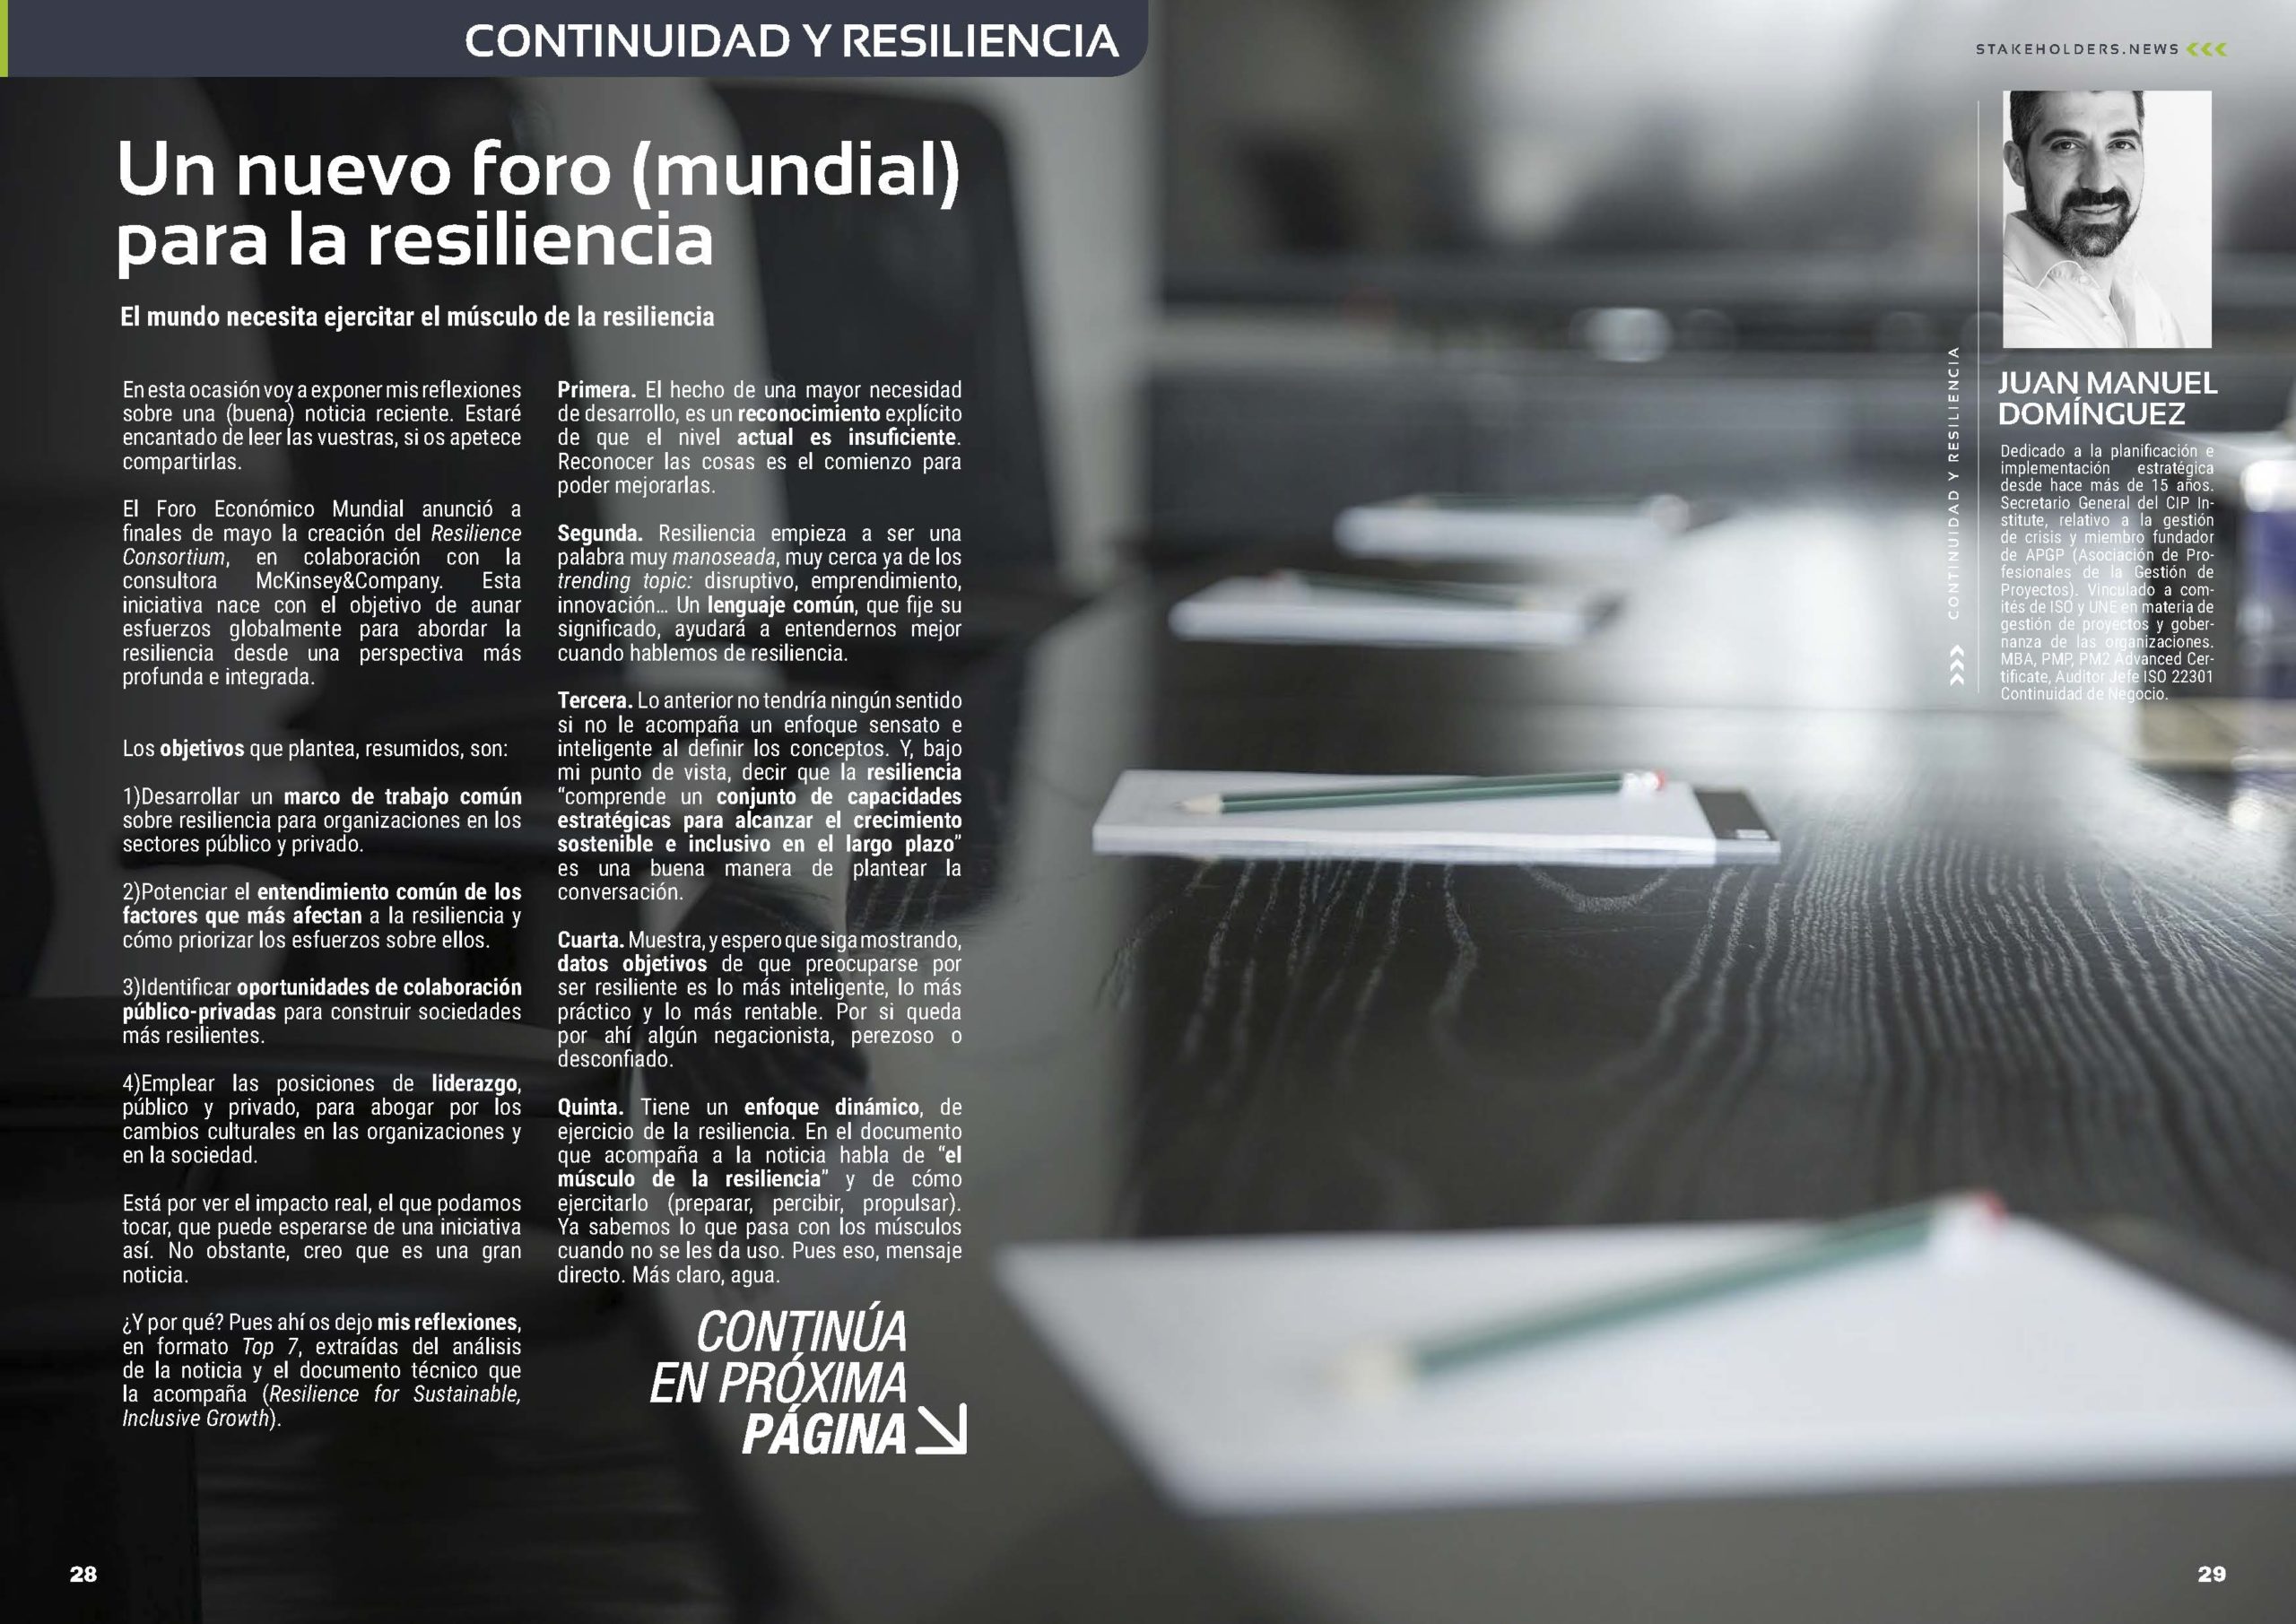 Articulo "Un nuevo foro (mundial) para la resiliencia" de Juan Manuel Dominguez en la Sección "Continuidad y Resiliencia" de la Revista Stakeholders.news